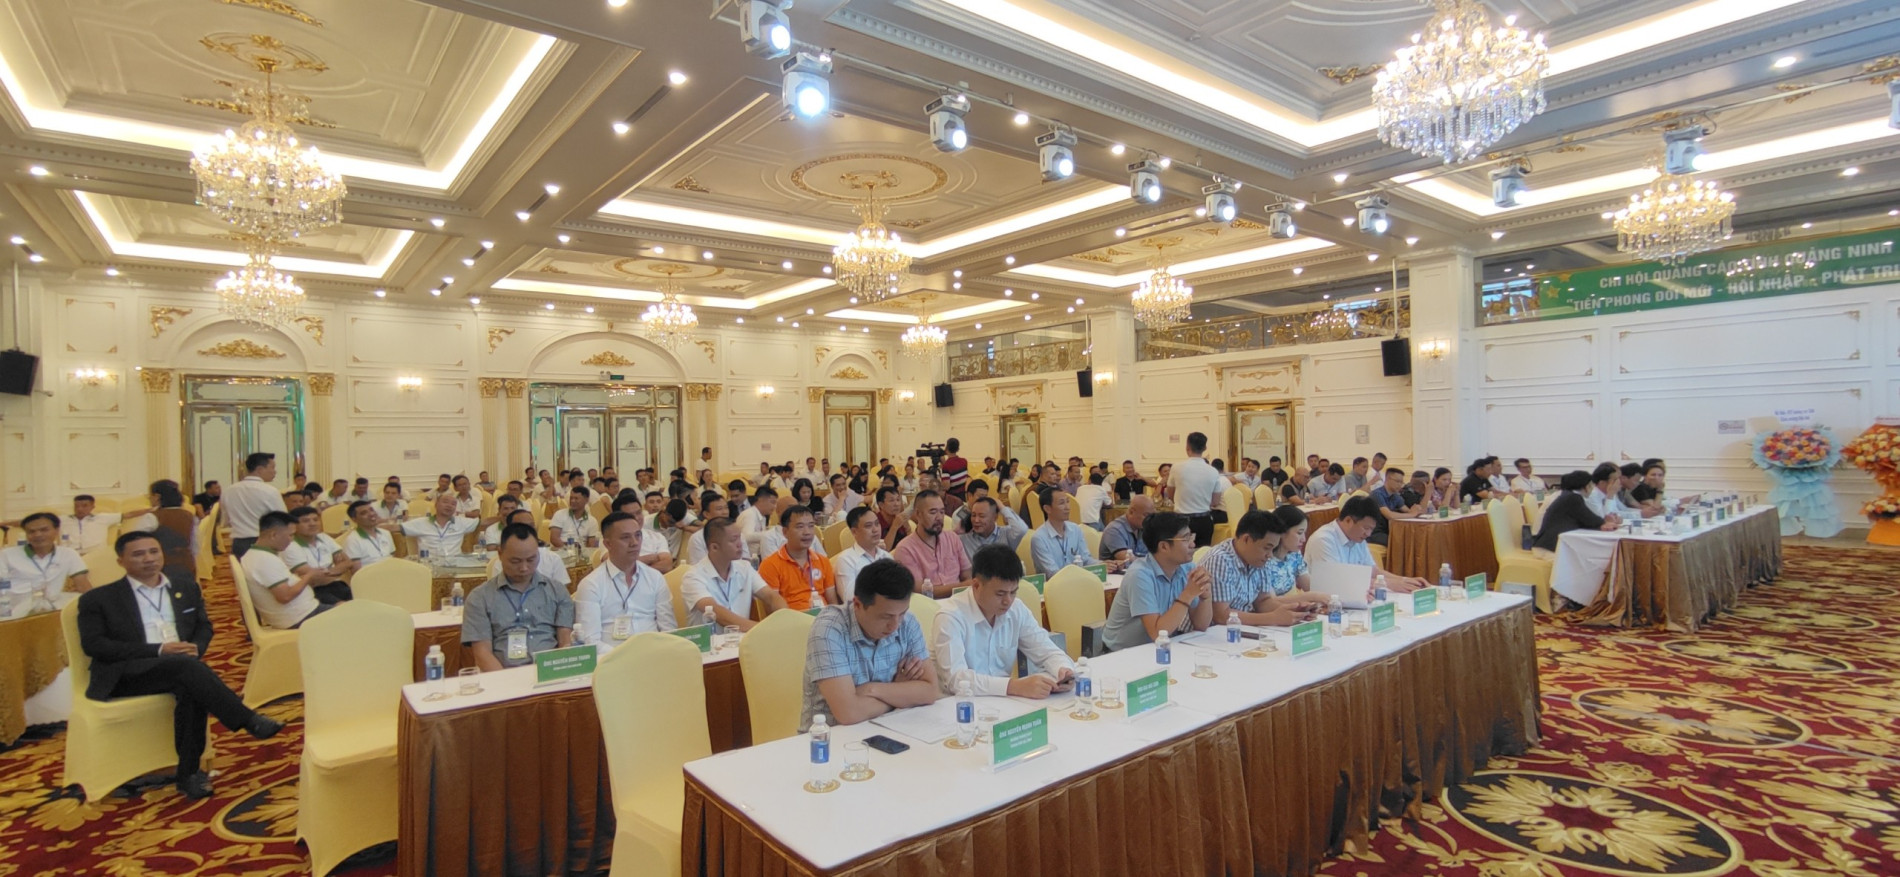 Đại hội Chi hội Quảng cáo tỉnh Quảng Ninh lần thứ II, nhiệm kỳ 2023 - 2026